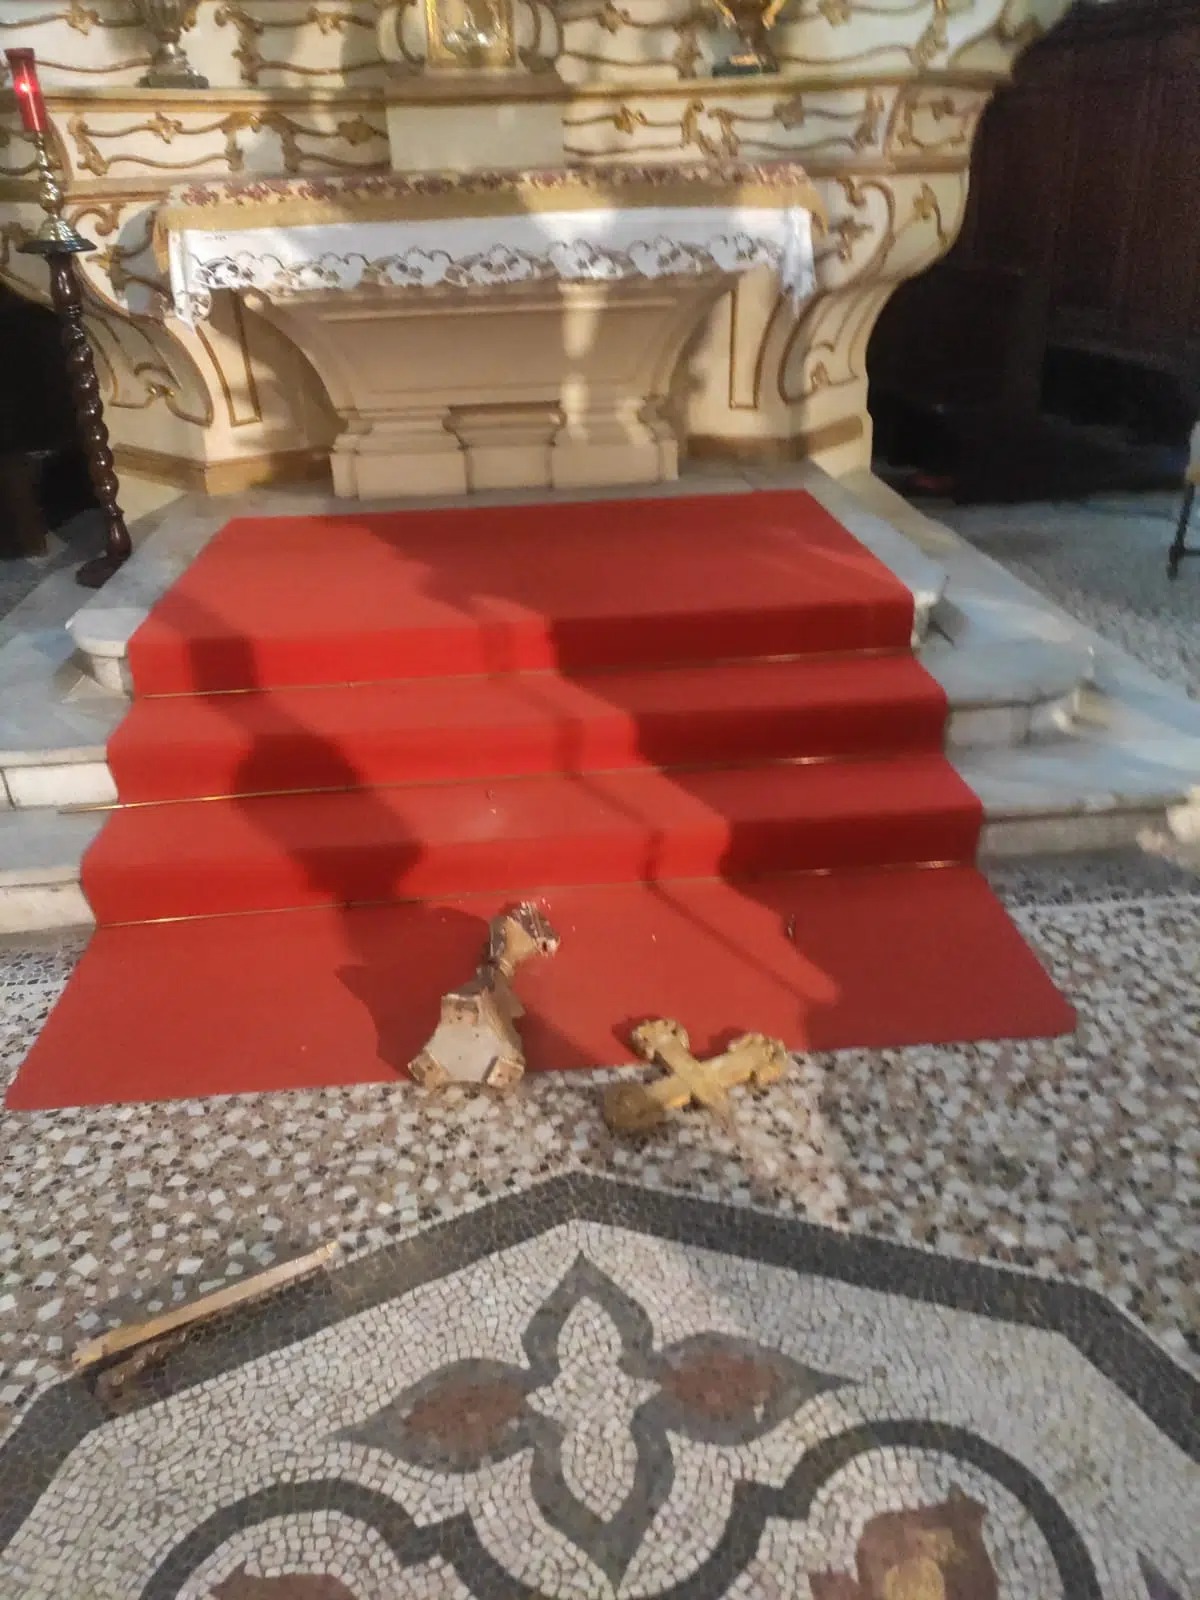 Marocchino espulso: il video dei danneggiamenti in chiesa